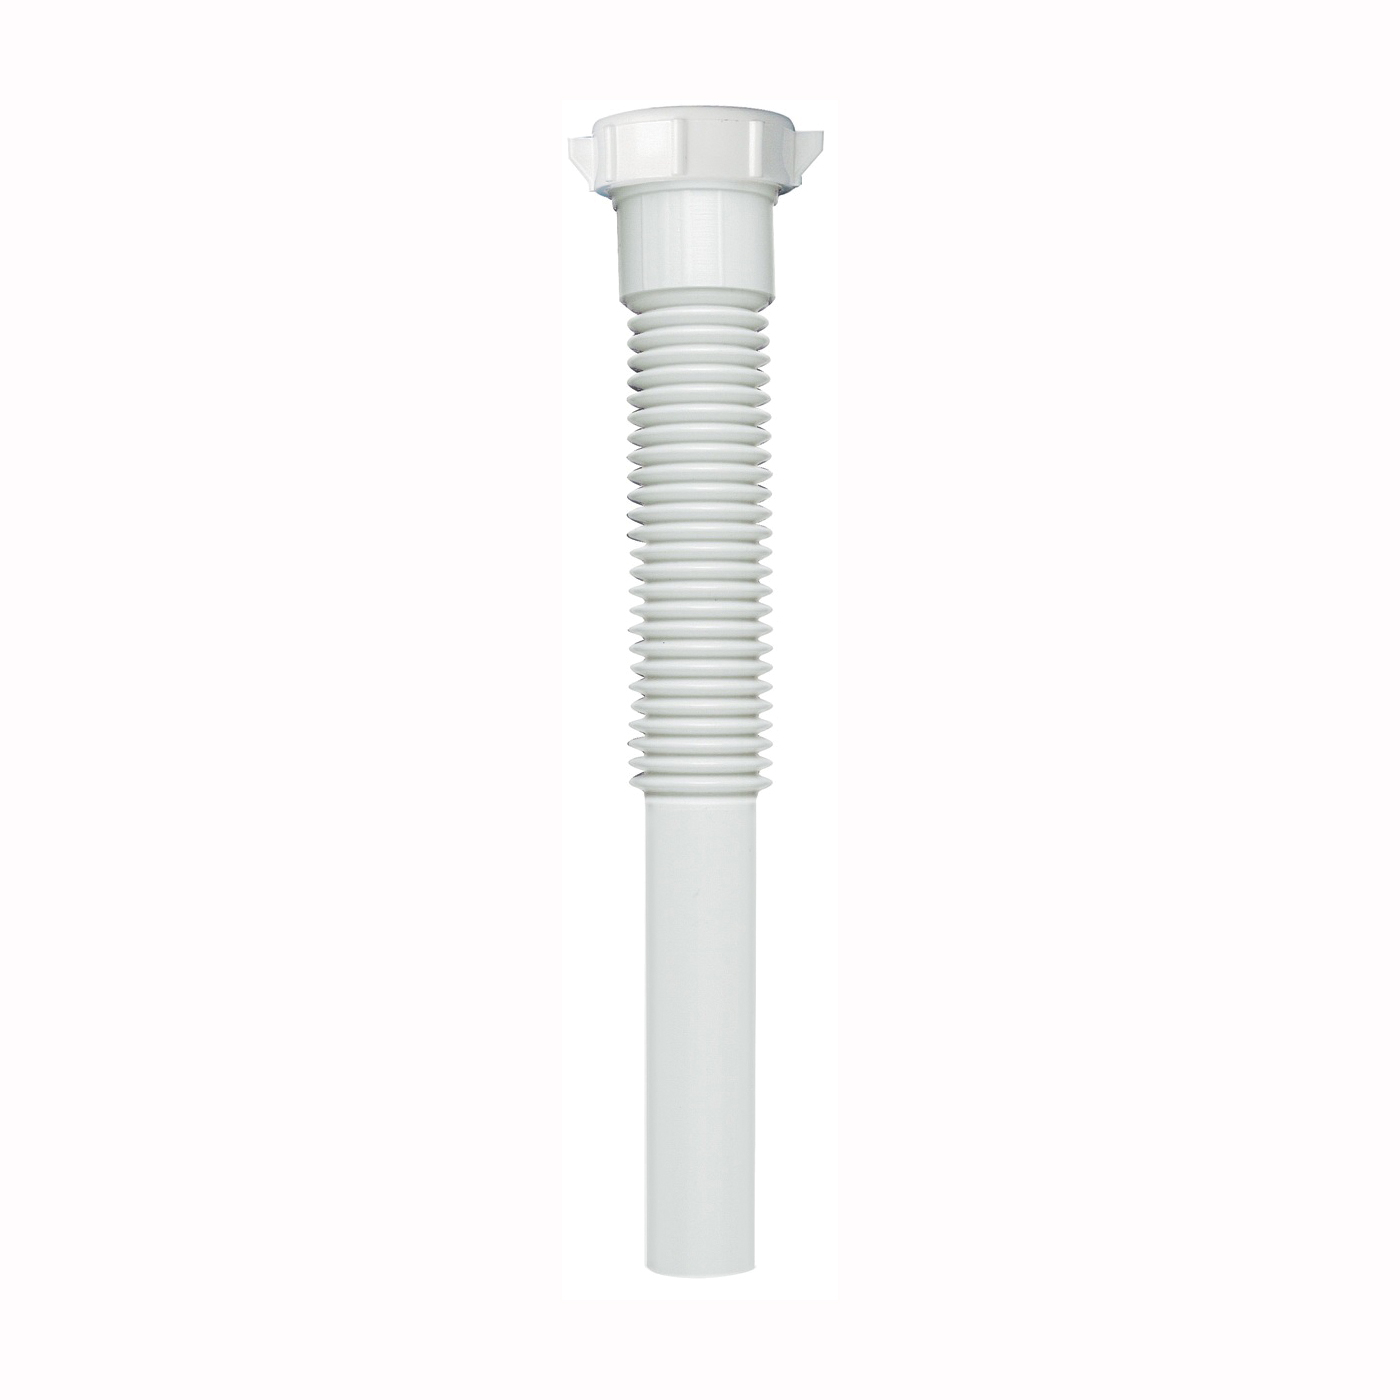 PP21205 Pipe Extension Tube, 1-1/4 in, 9 in L, Slip-Joint, Plastic